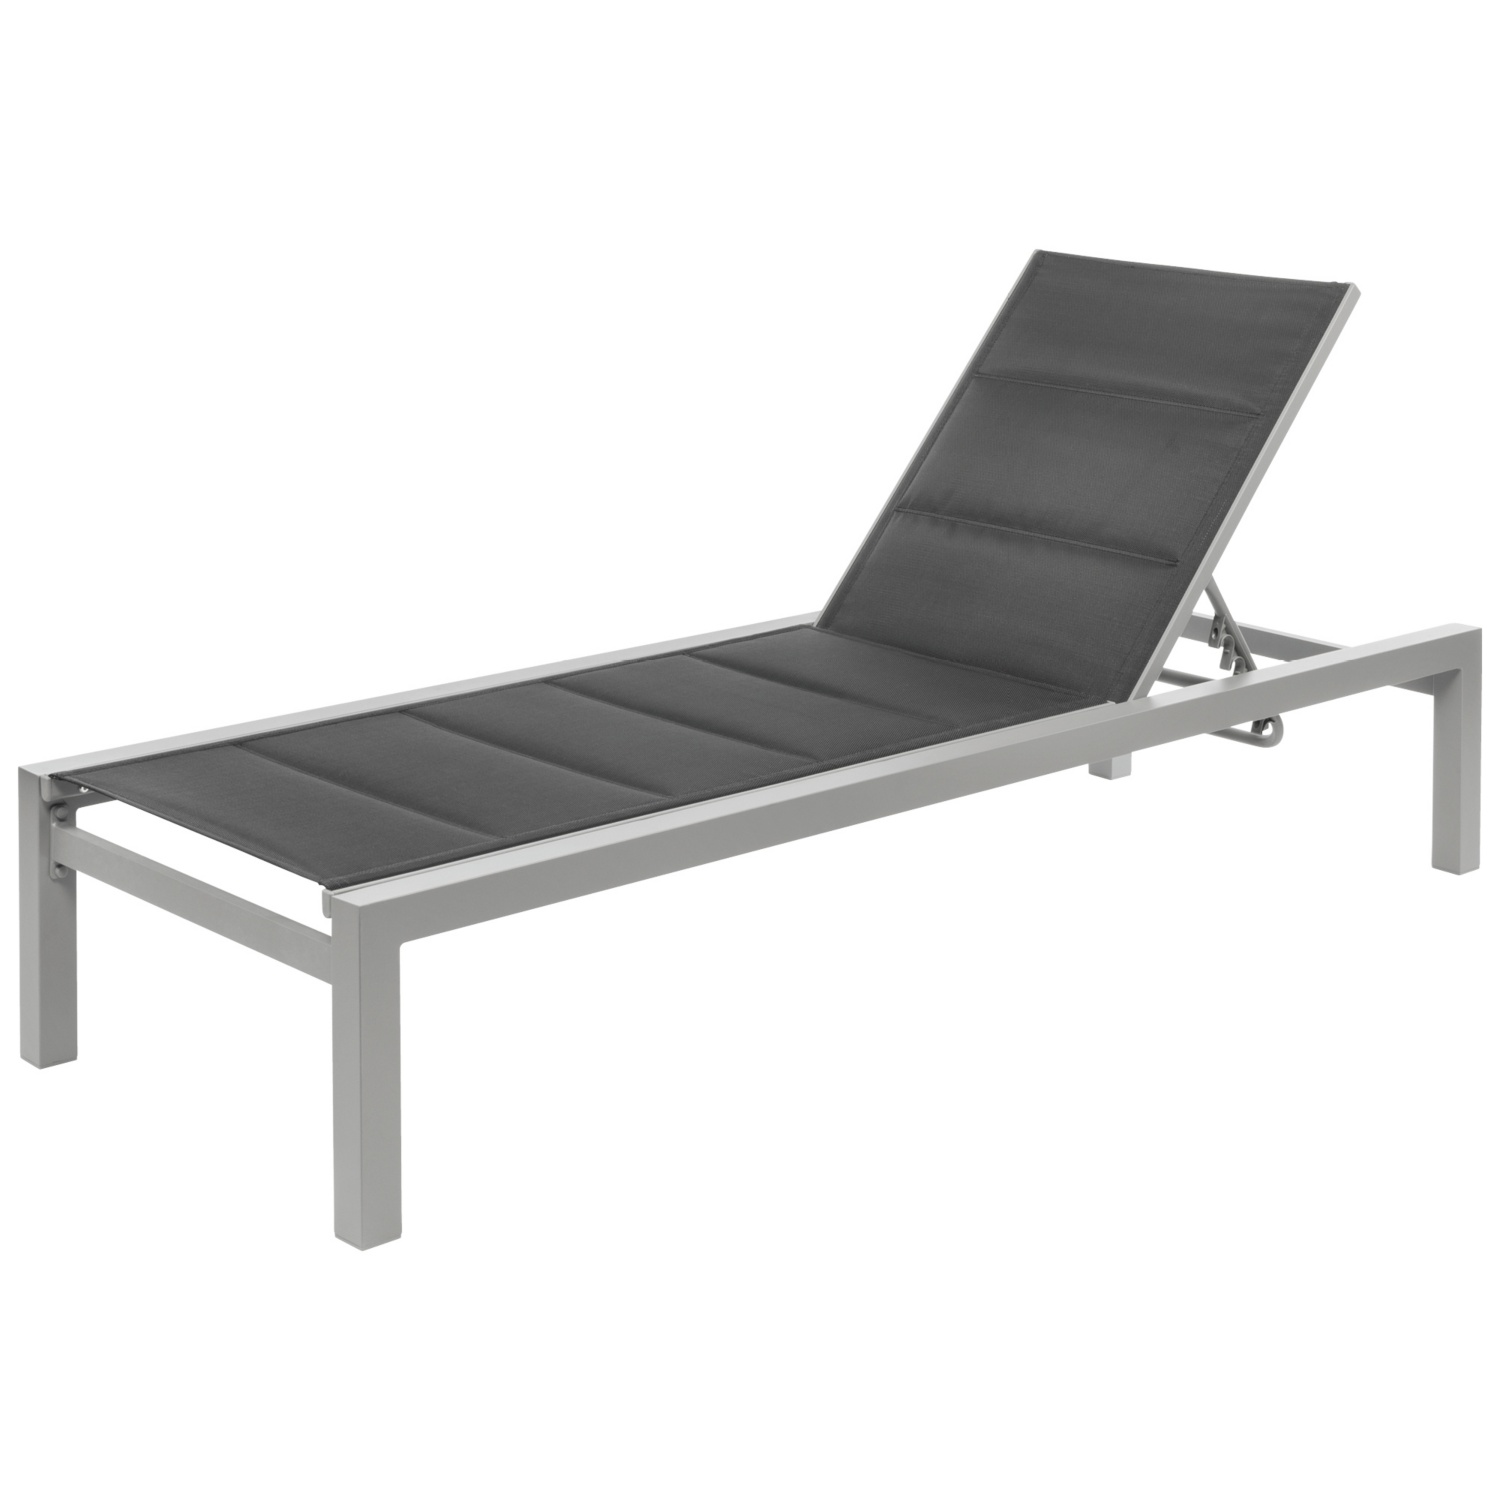 BELAVI Chaise longue en aluminium moderne